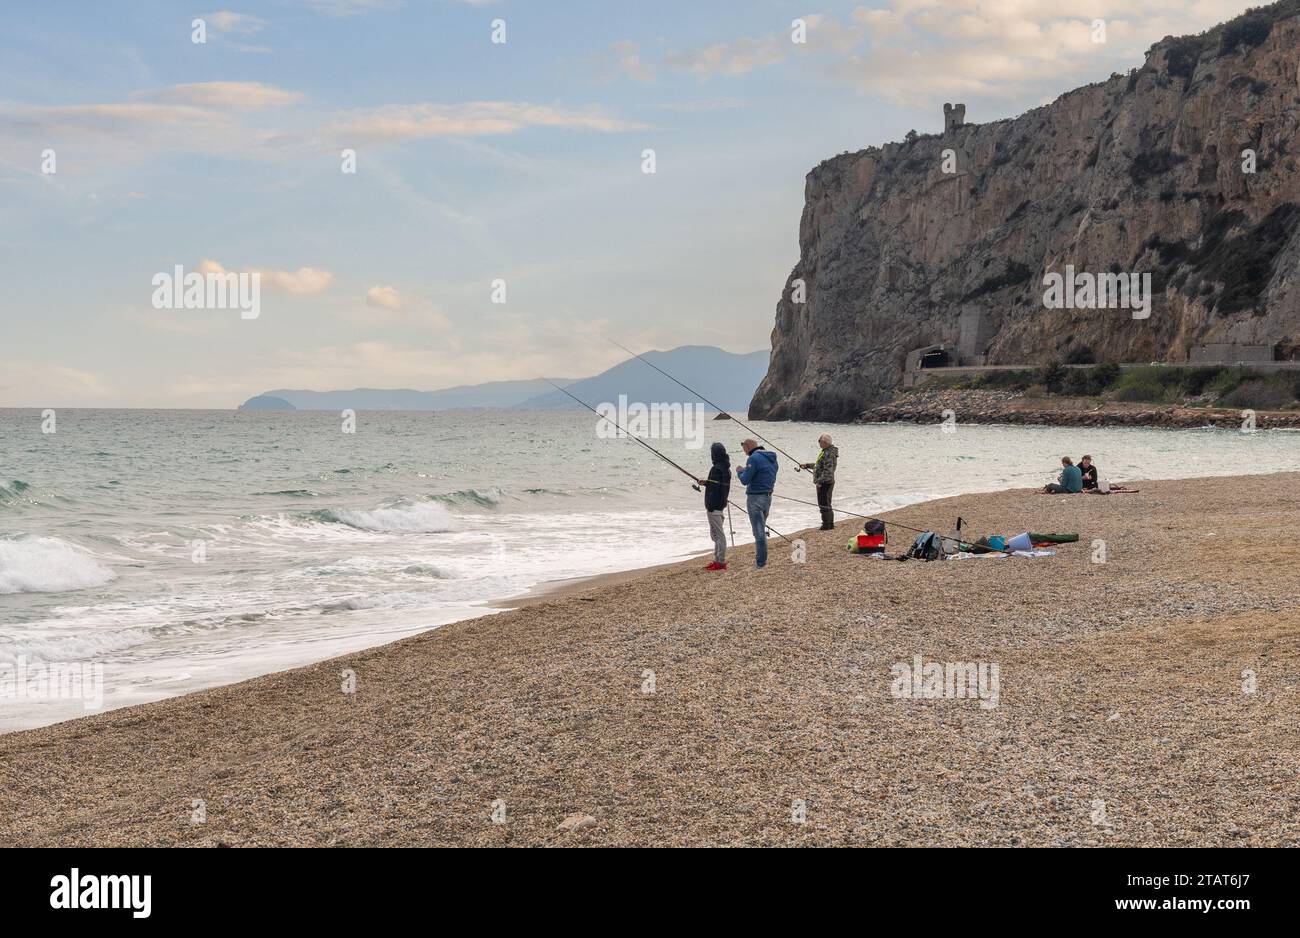 Uomini pesca con canne sulla spiaggia con il promontorio di Caprazoppa e la costa sullo sfondo al tramonto, finale Ligure, Savona, Liguria, Italia Foto Stock